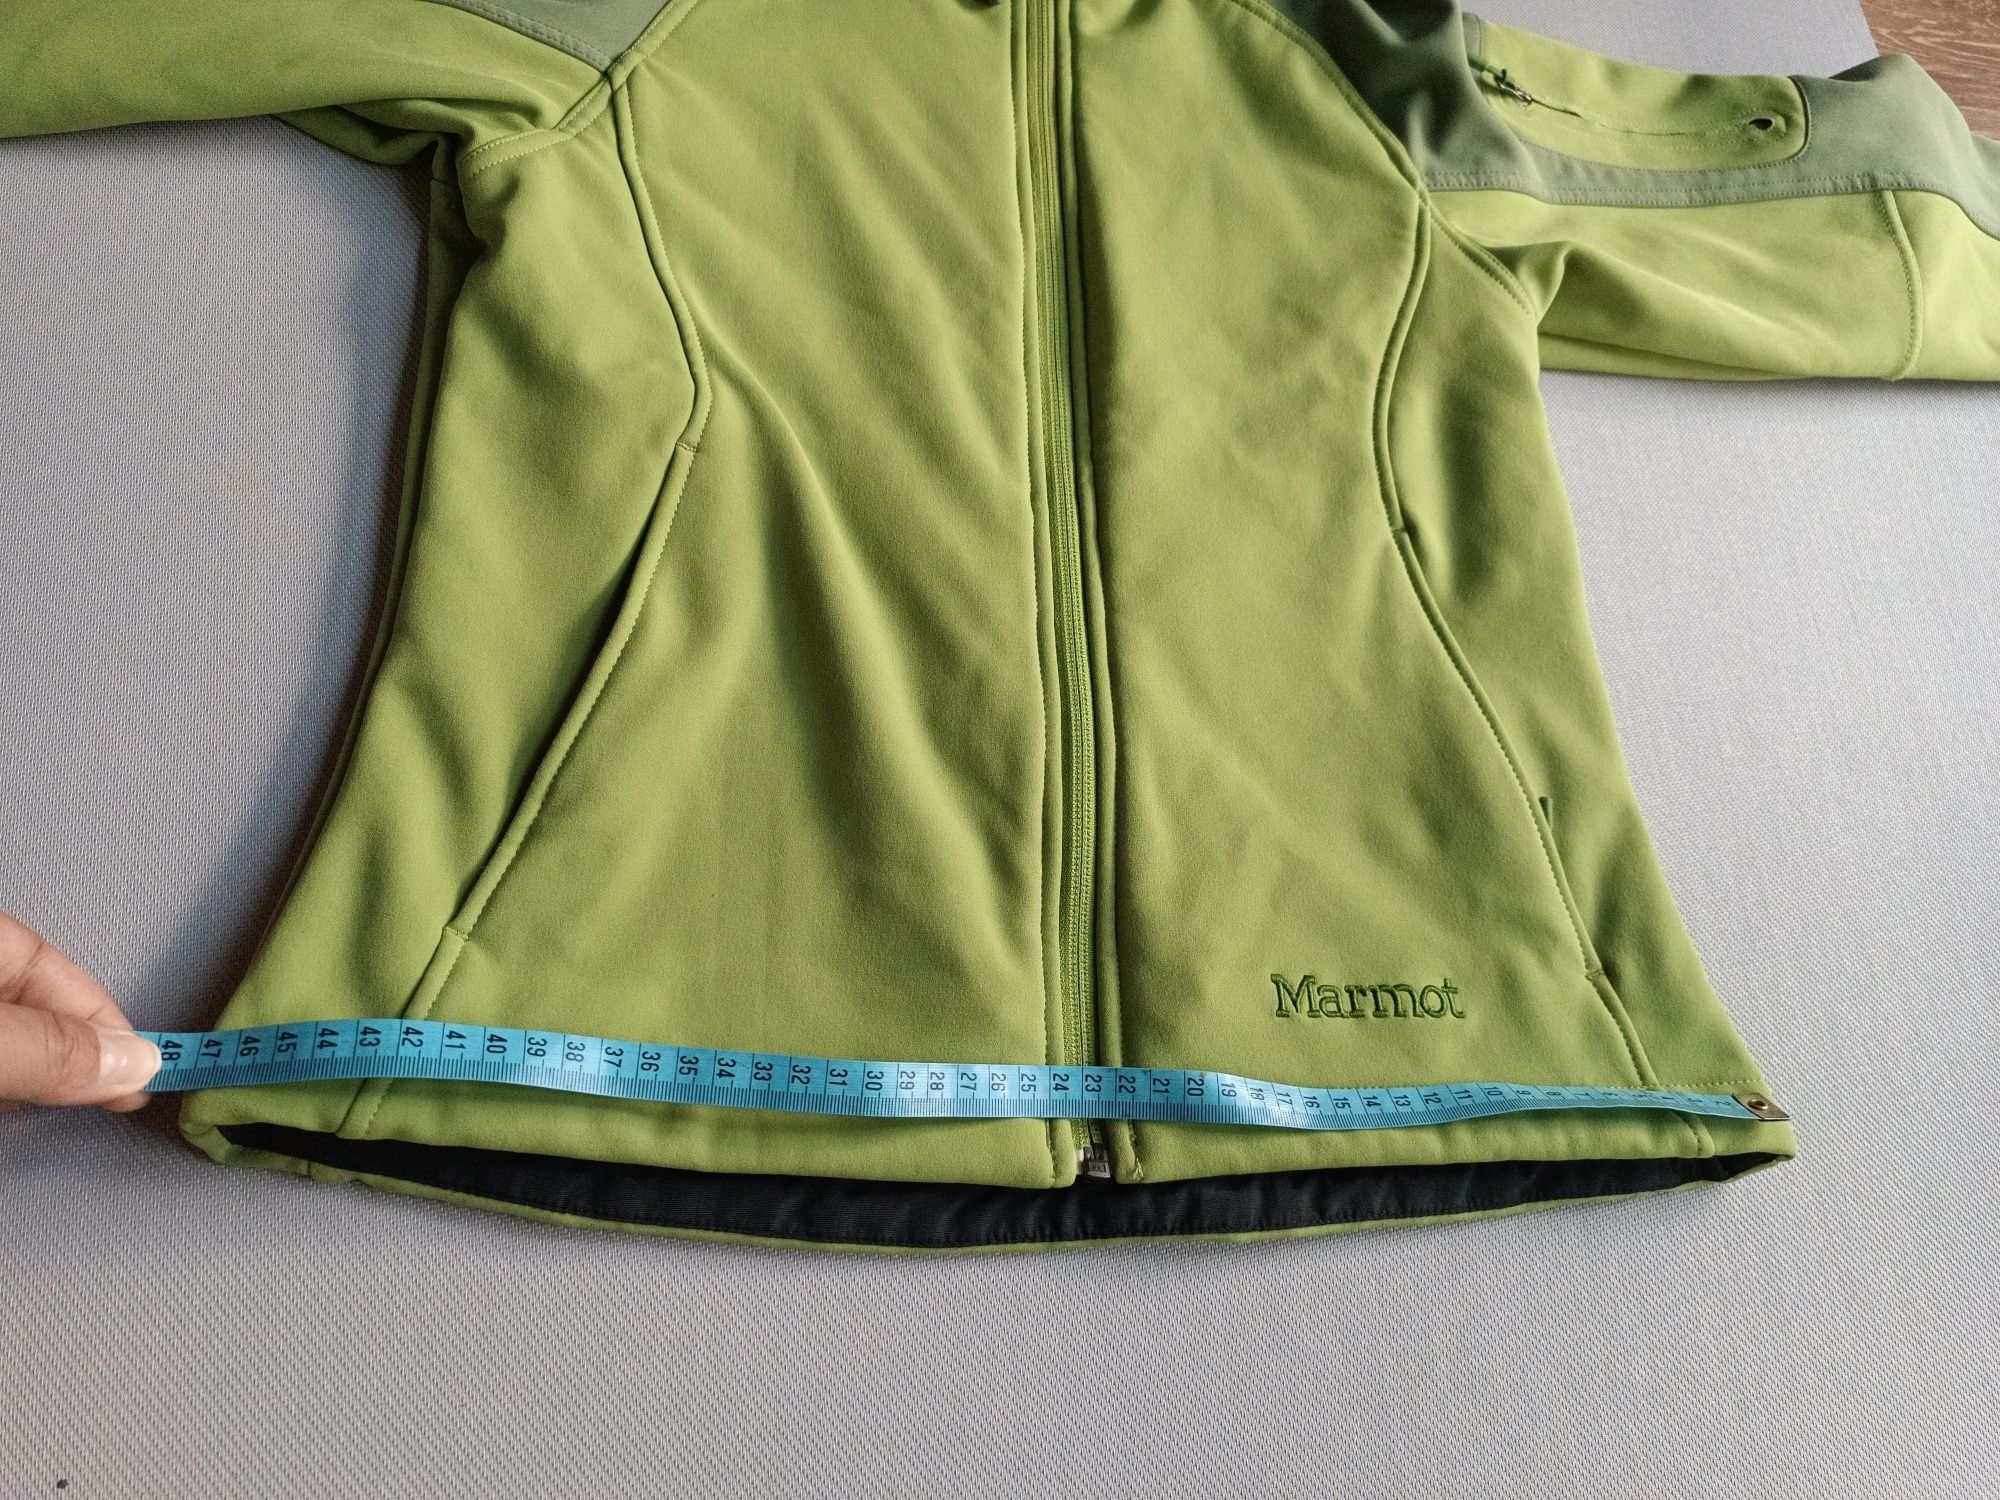 Marmot Softshell rozmiar S/P damska zielona kurtka